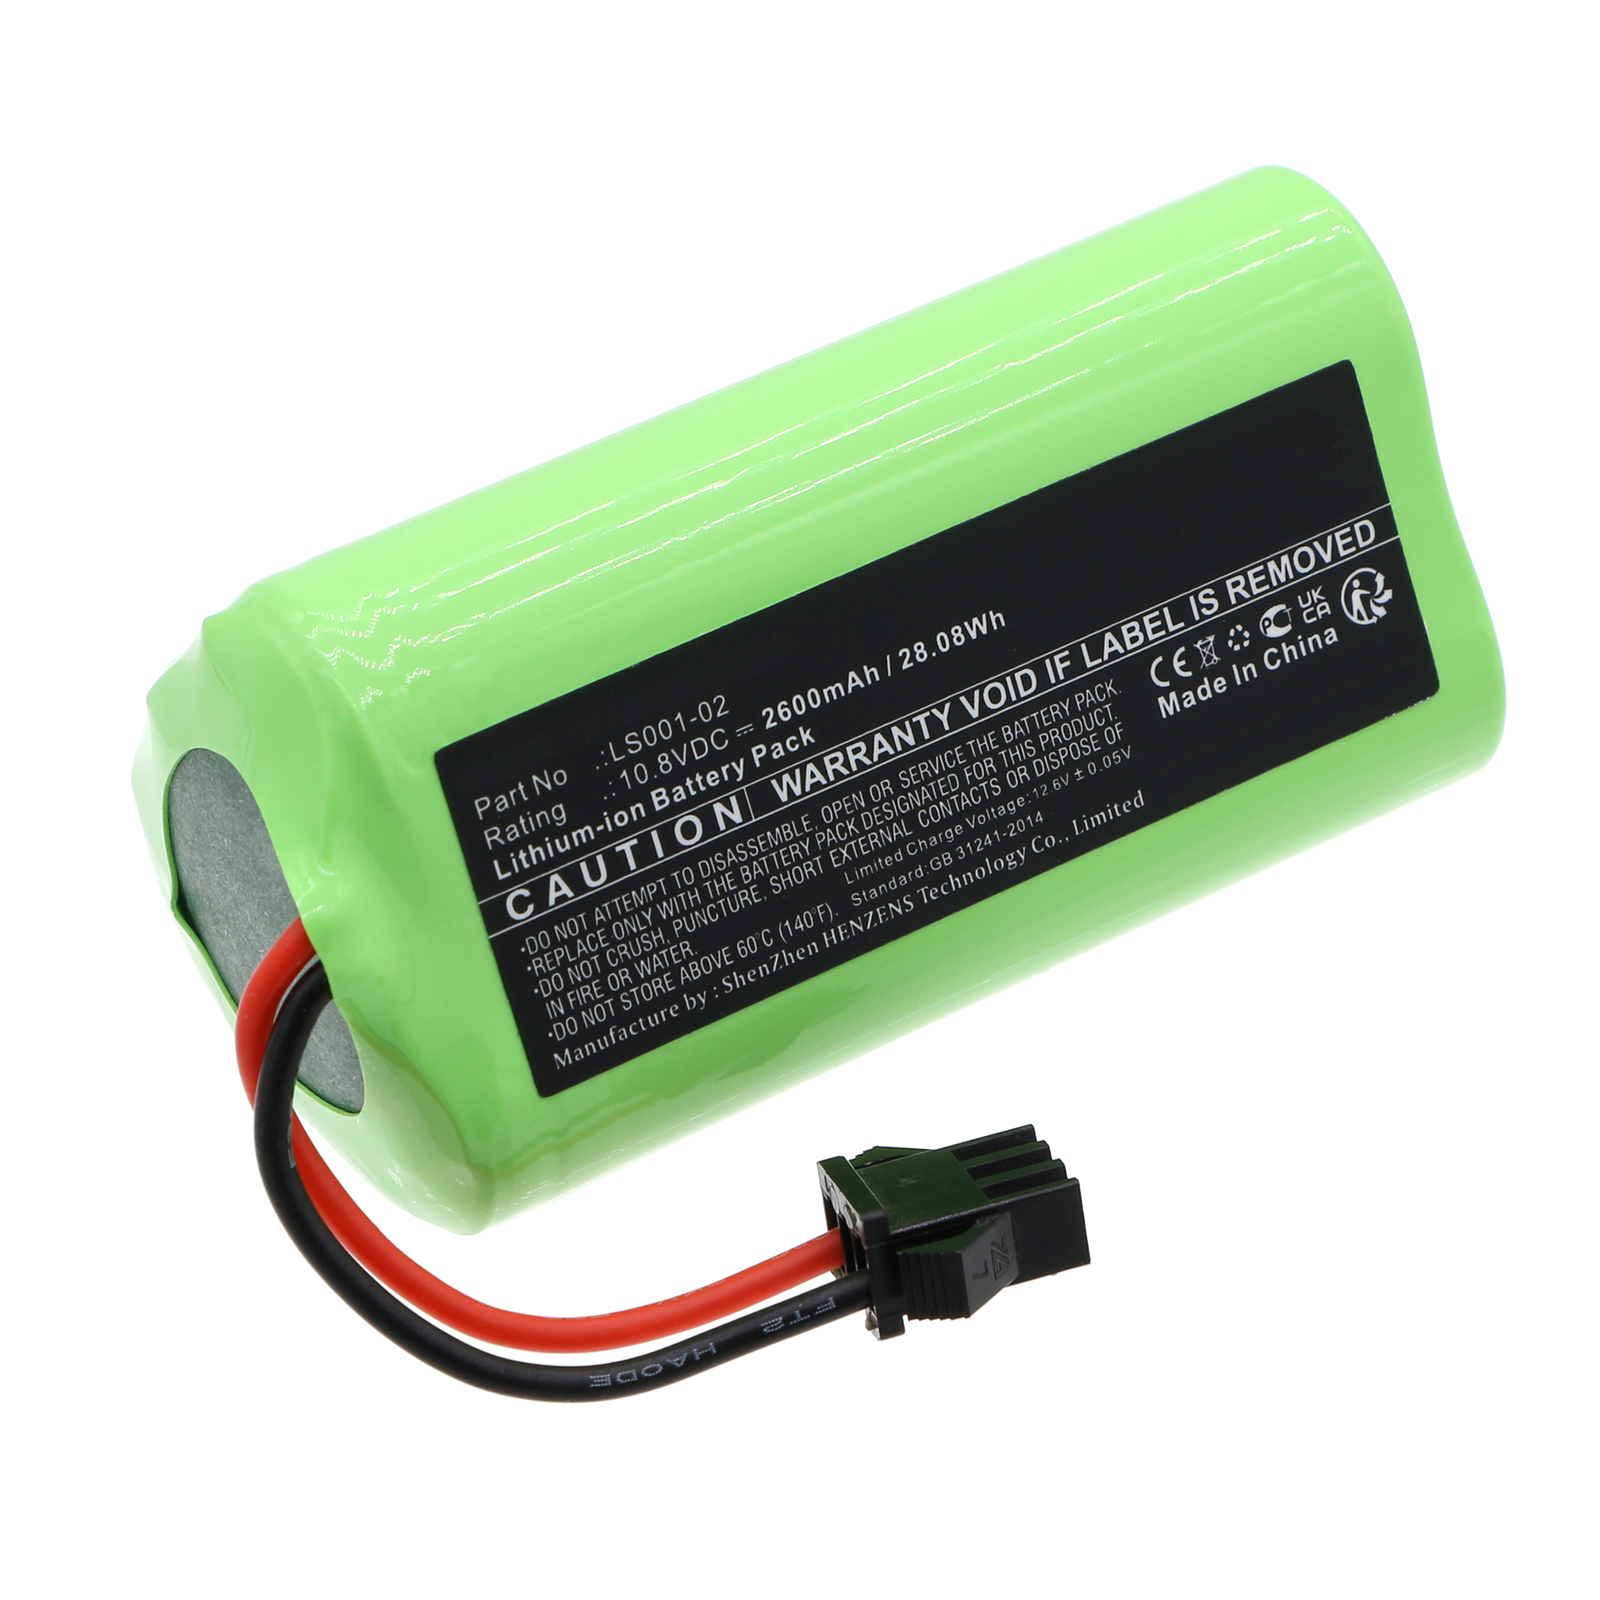 Synergy Digital Vacuum Cleaner Battery, Compatible with Vactidy LS001-02 Vacuum Cleaner Battery (Li-ion, 10.8V, 2600mAh)